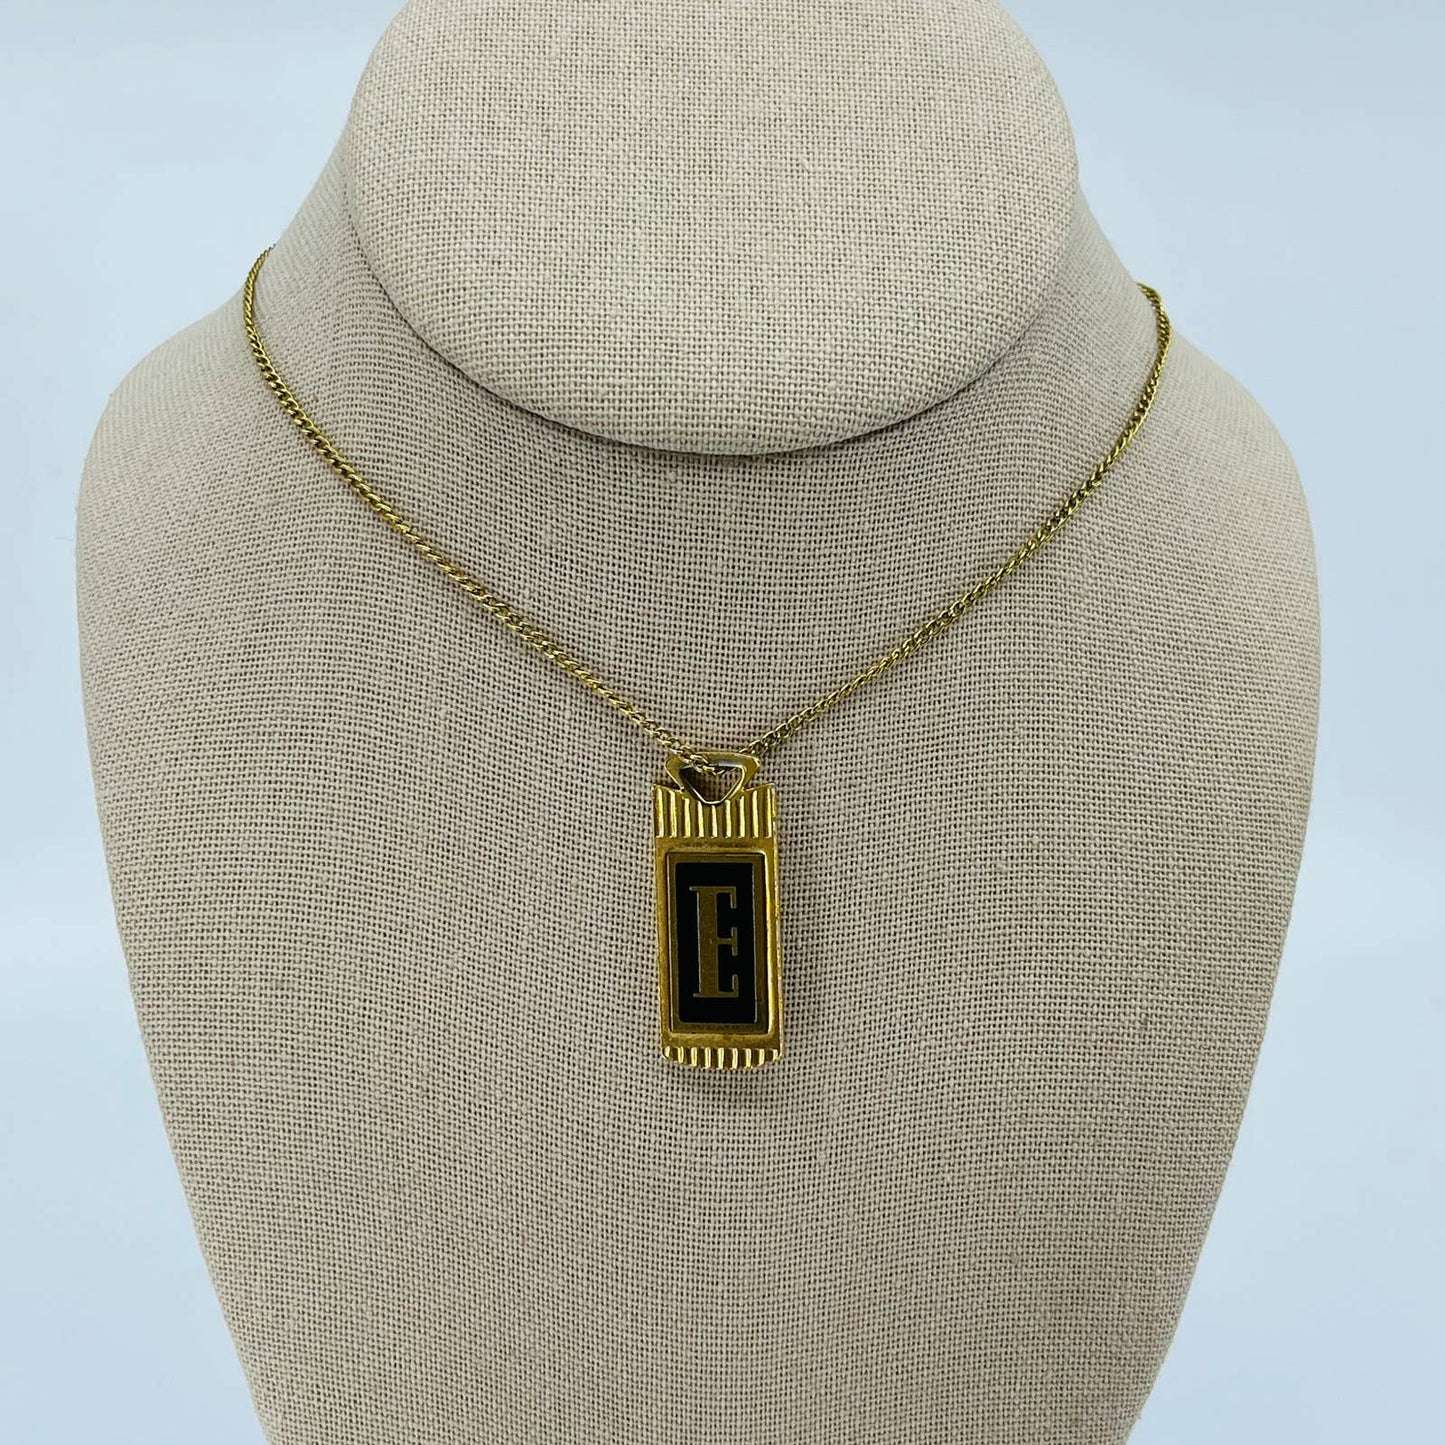 Vintage Art Deco Gold-Tone E Monogrammed Pendant Necklace SB2